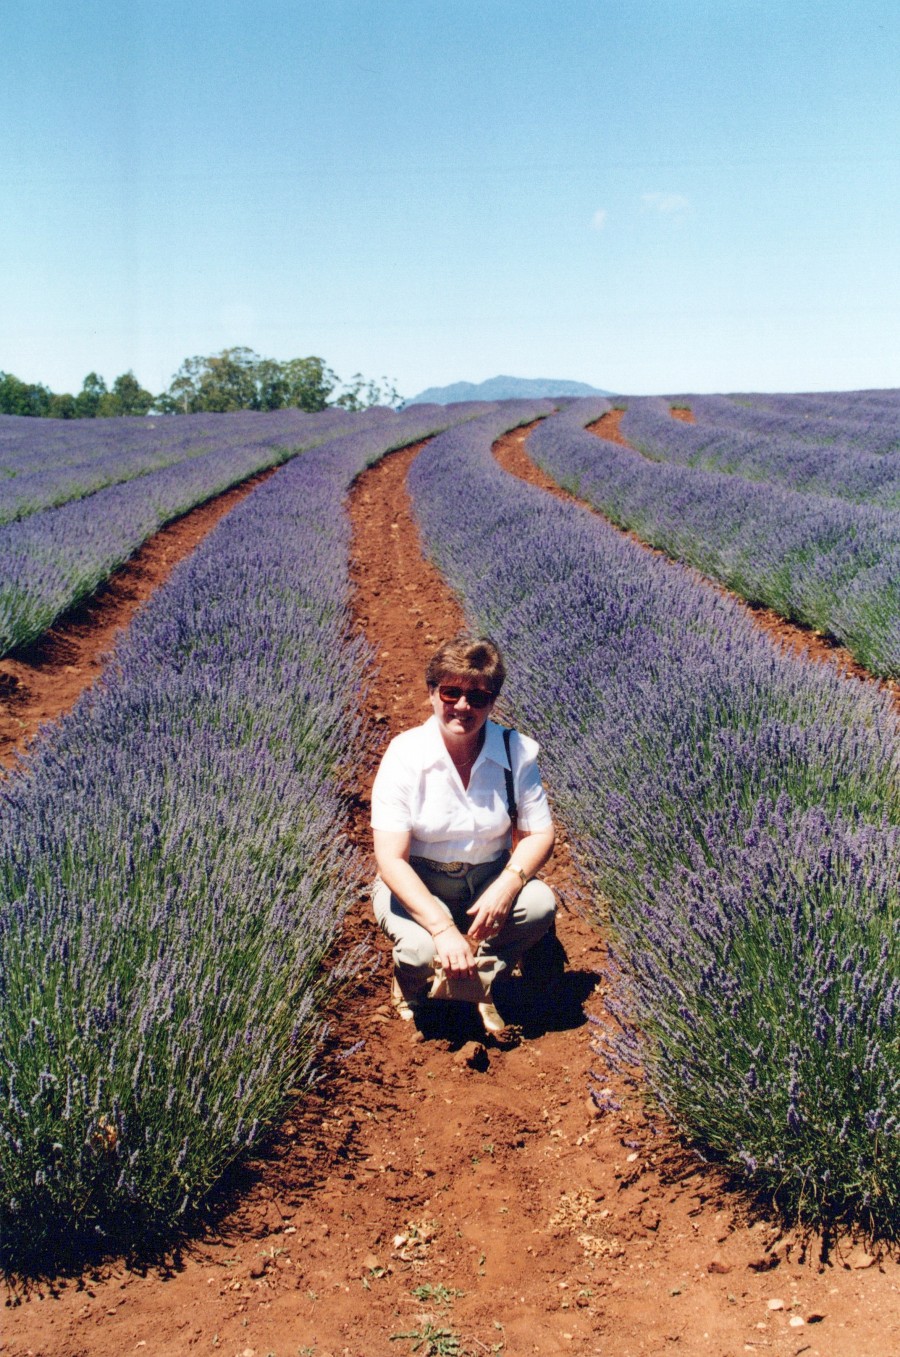 Bridestowe Lavender Farm, Tasmania